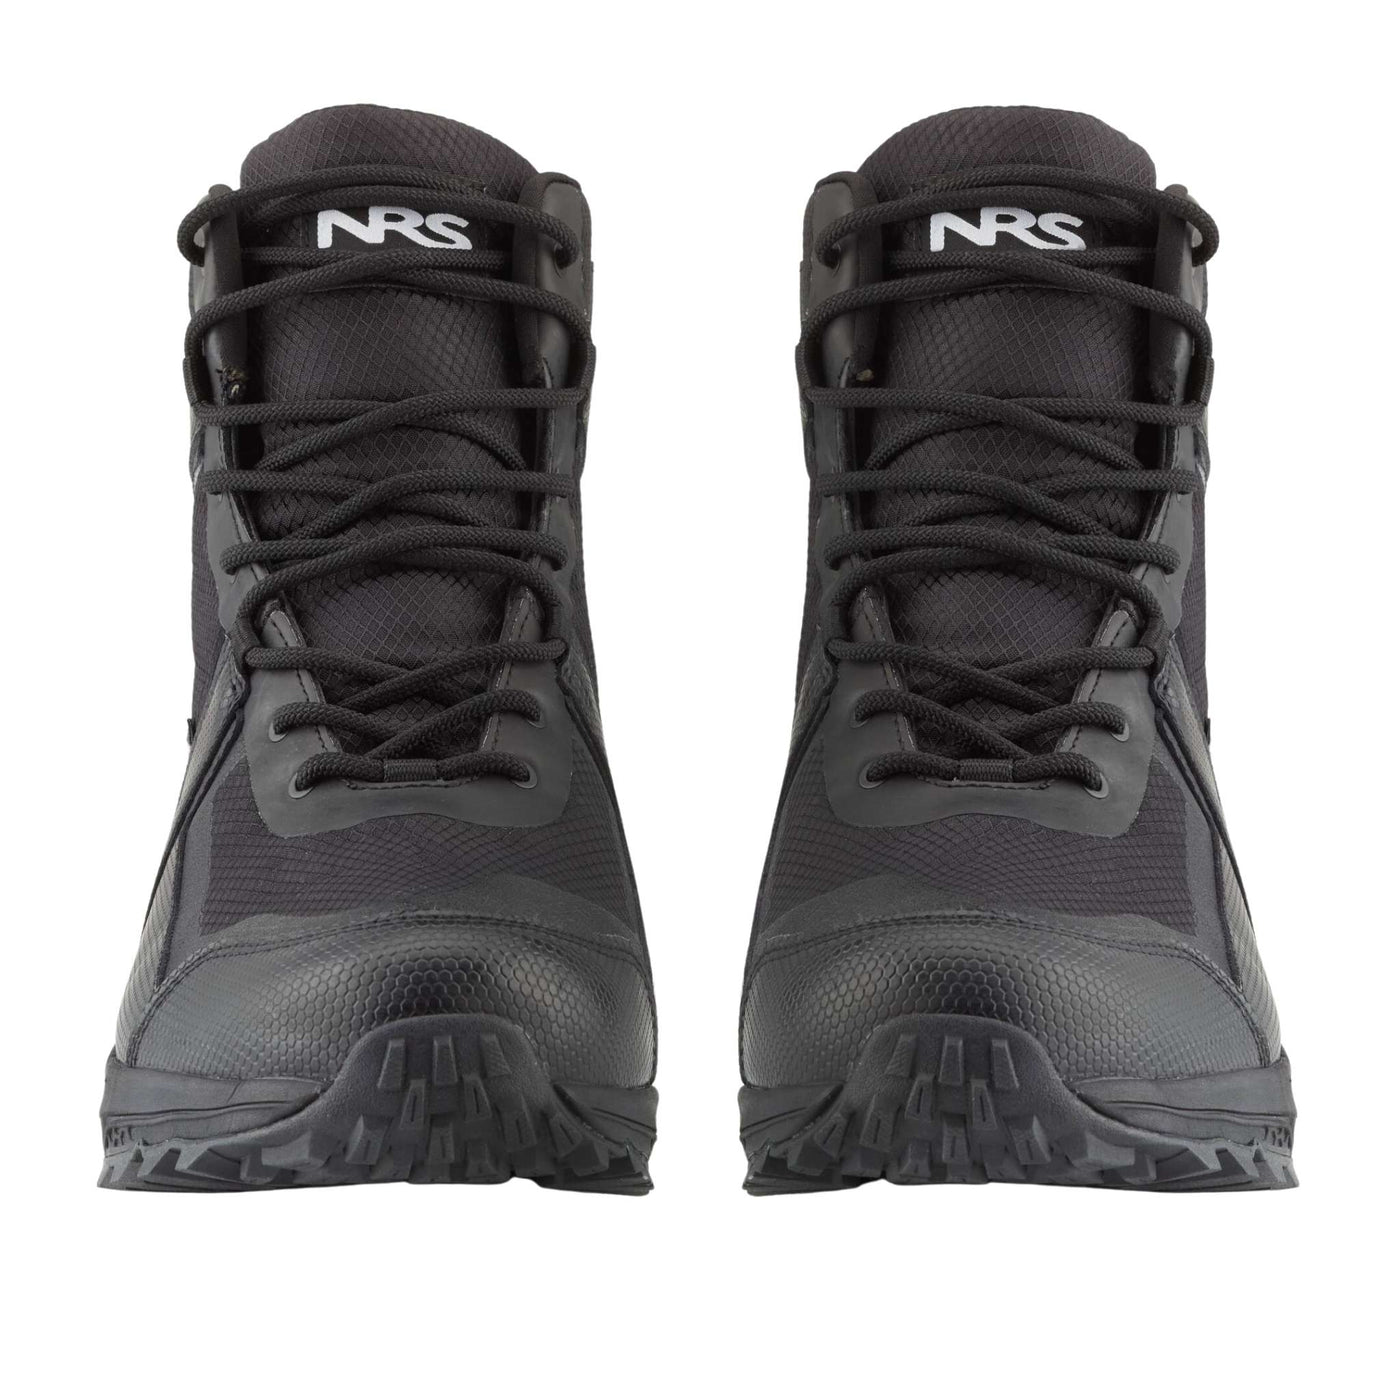 NRS Storm Boots | Kayak Booties NZ | Further Faster Christchurch NZ #black